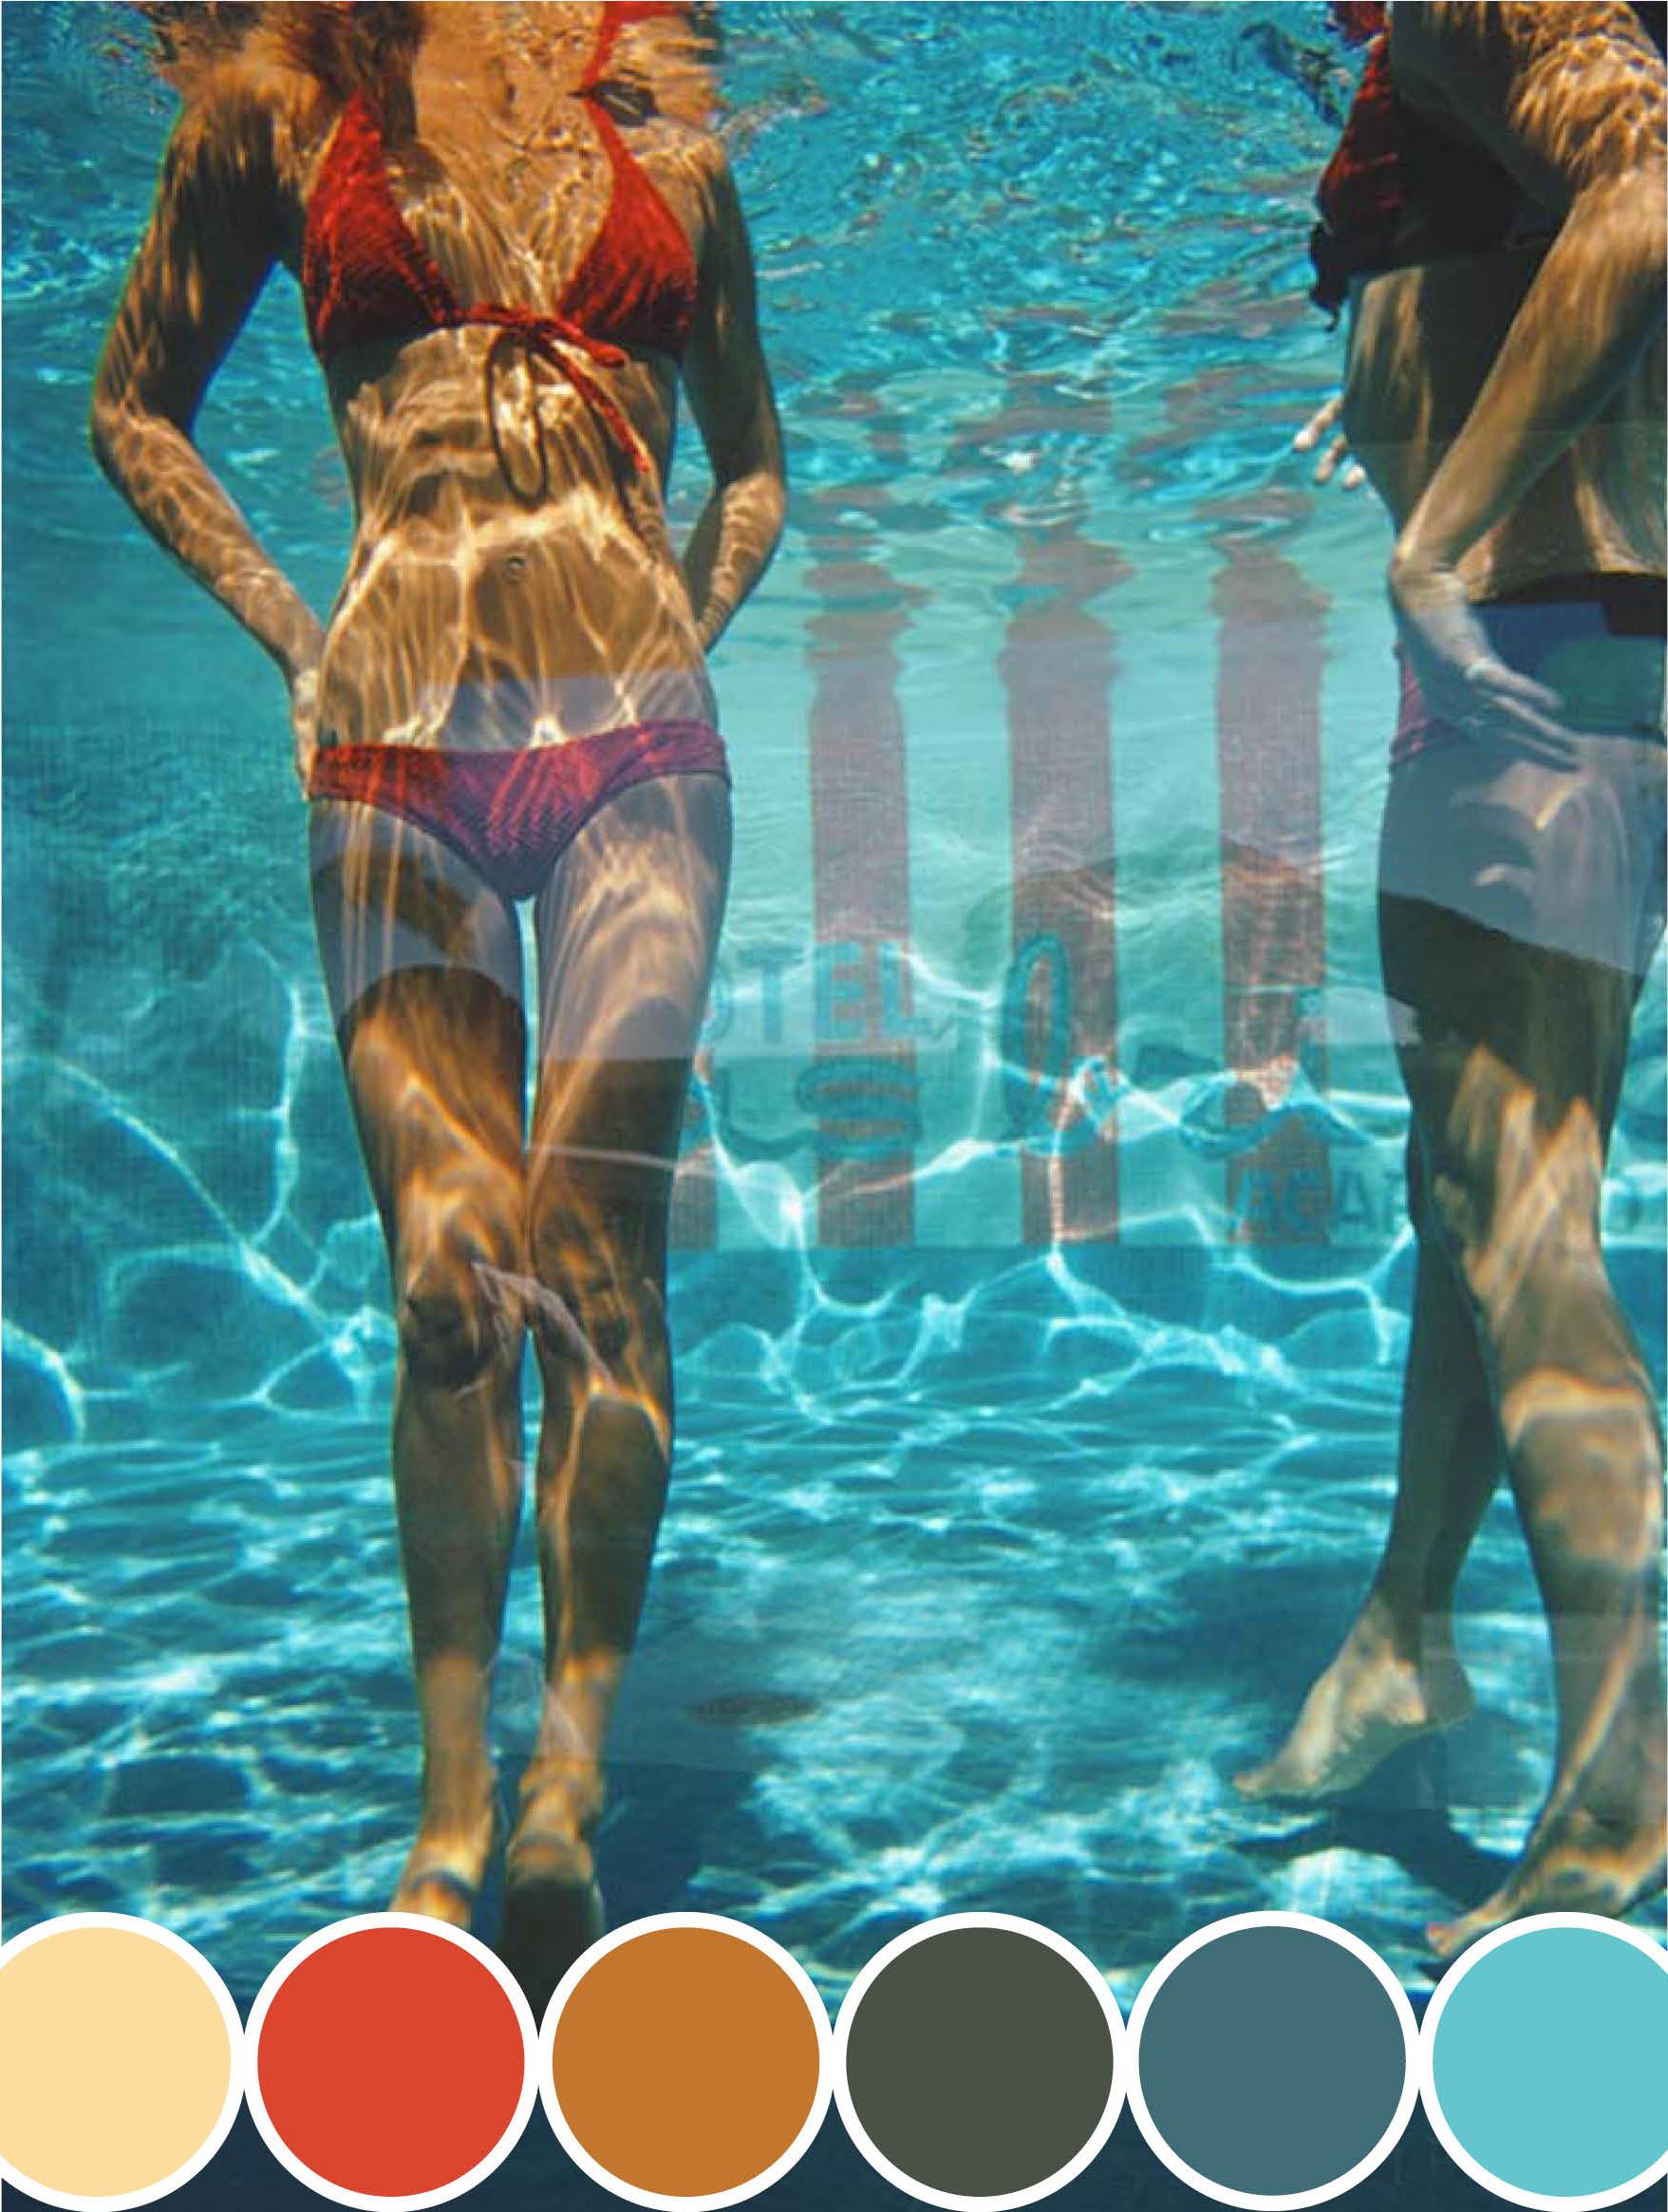 Une vue sous-marine de la piscine de l'hôtel Las Brisas à Acapulco, Mexique, février 1972.

Une femme boit dans une noix de coco sous l'eau de la piscine de l'hôtel Las Brisas à Acapulco, Mexique, février 1972.

Slim Aarons
Boisson